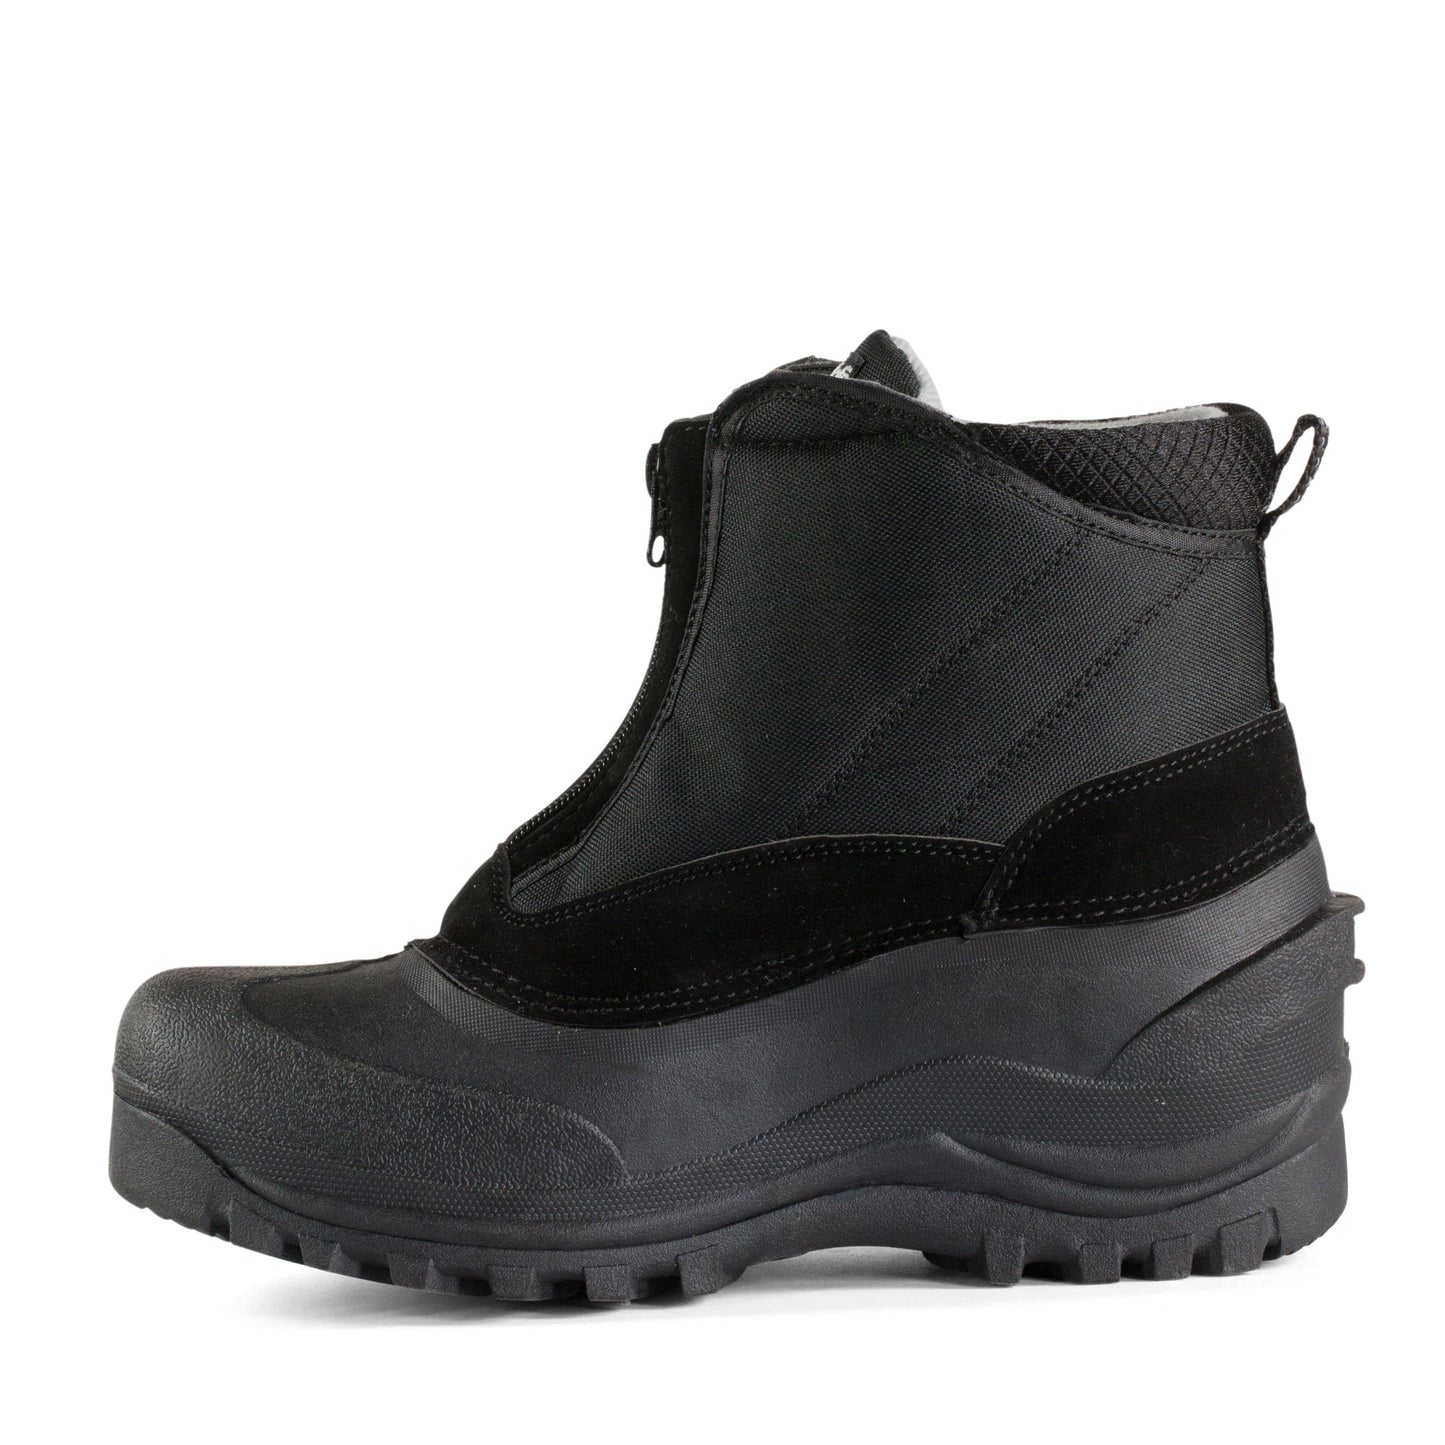 Zip Stable Boots - Wanneroo Stockfeeders